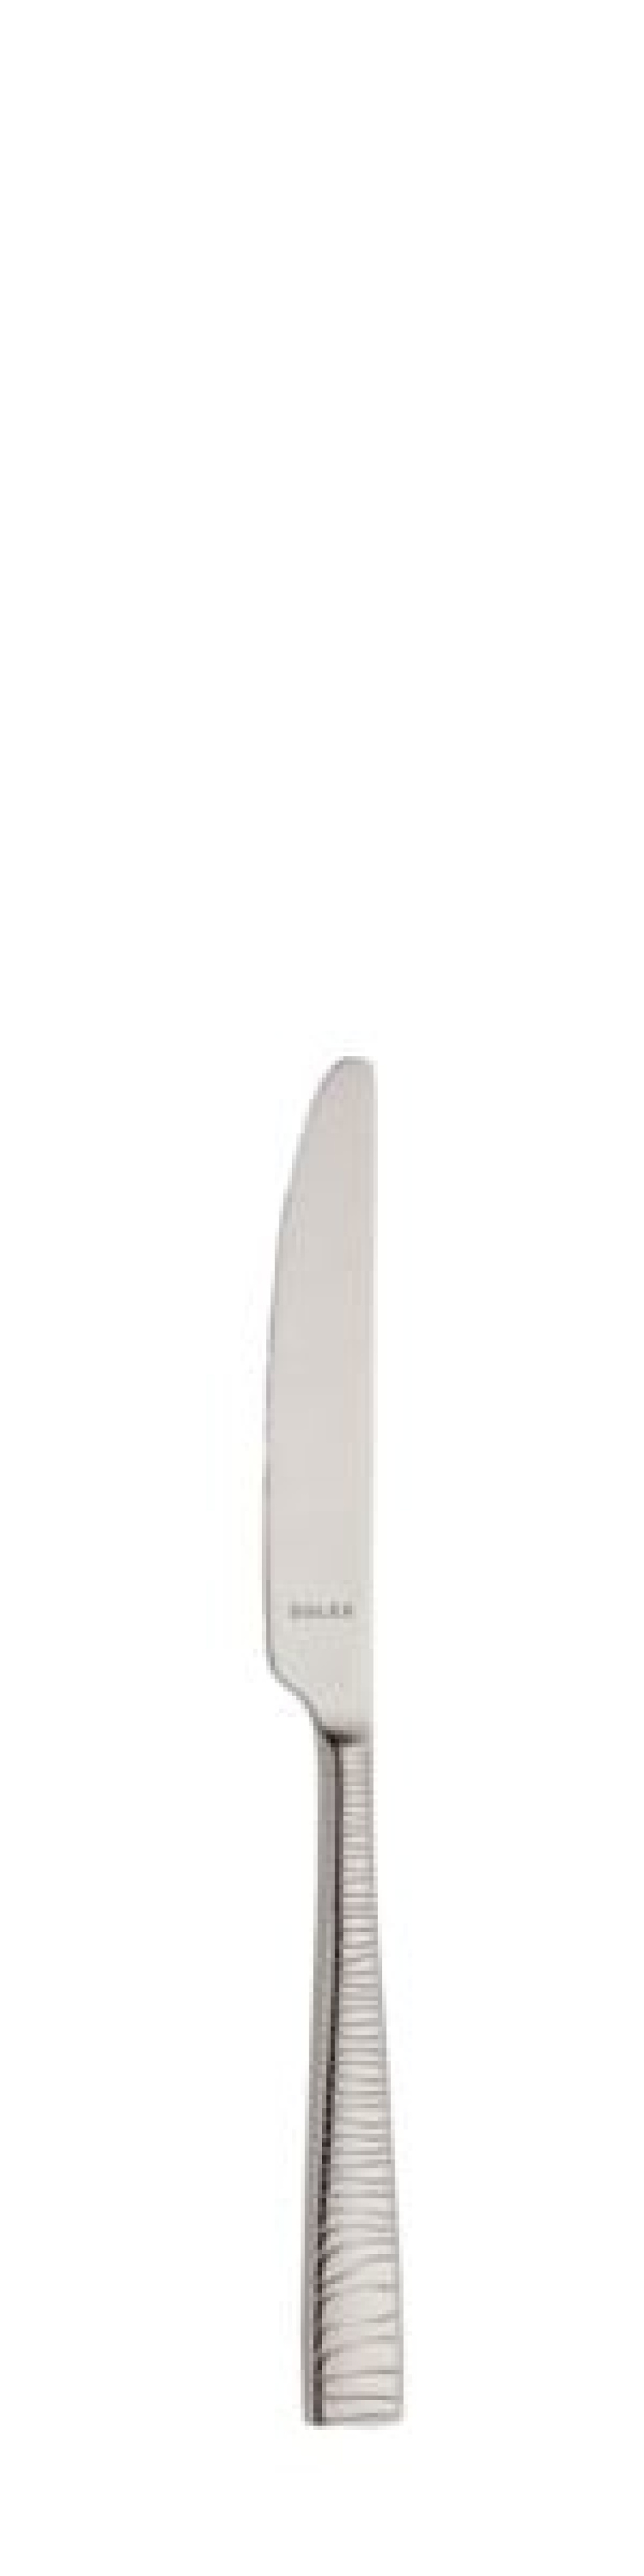 Alexa smørkniv 170 mm - Solex i gruppen Borddækning / Bestik / Smør knive hos The Kitchen Lab (1284-21677)